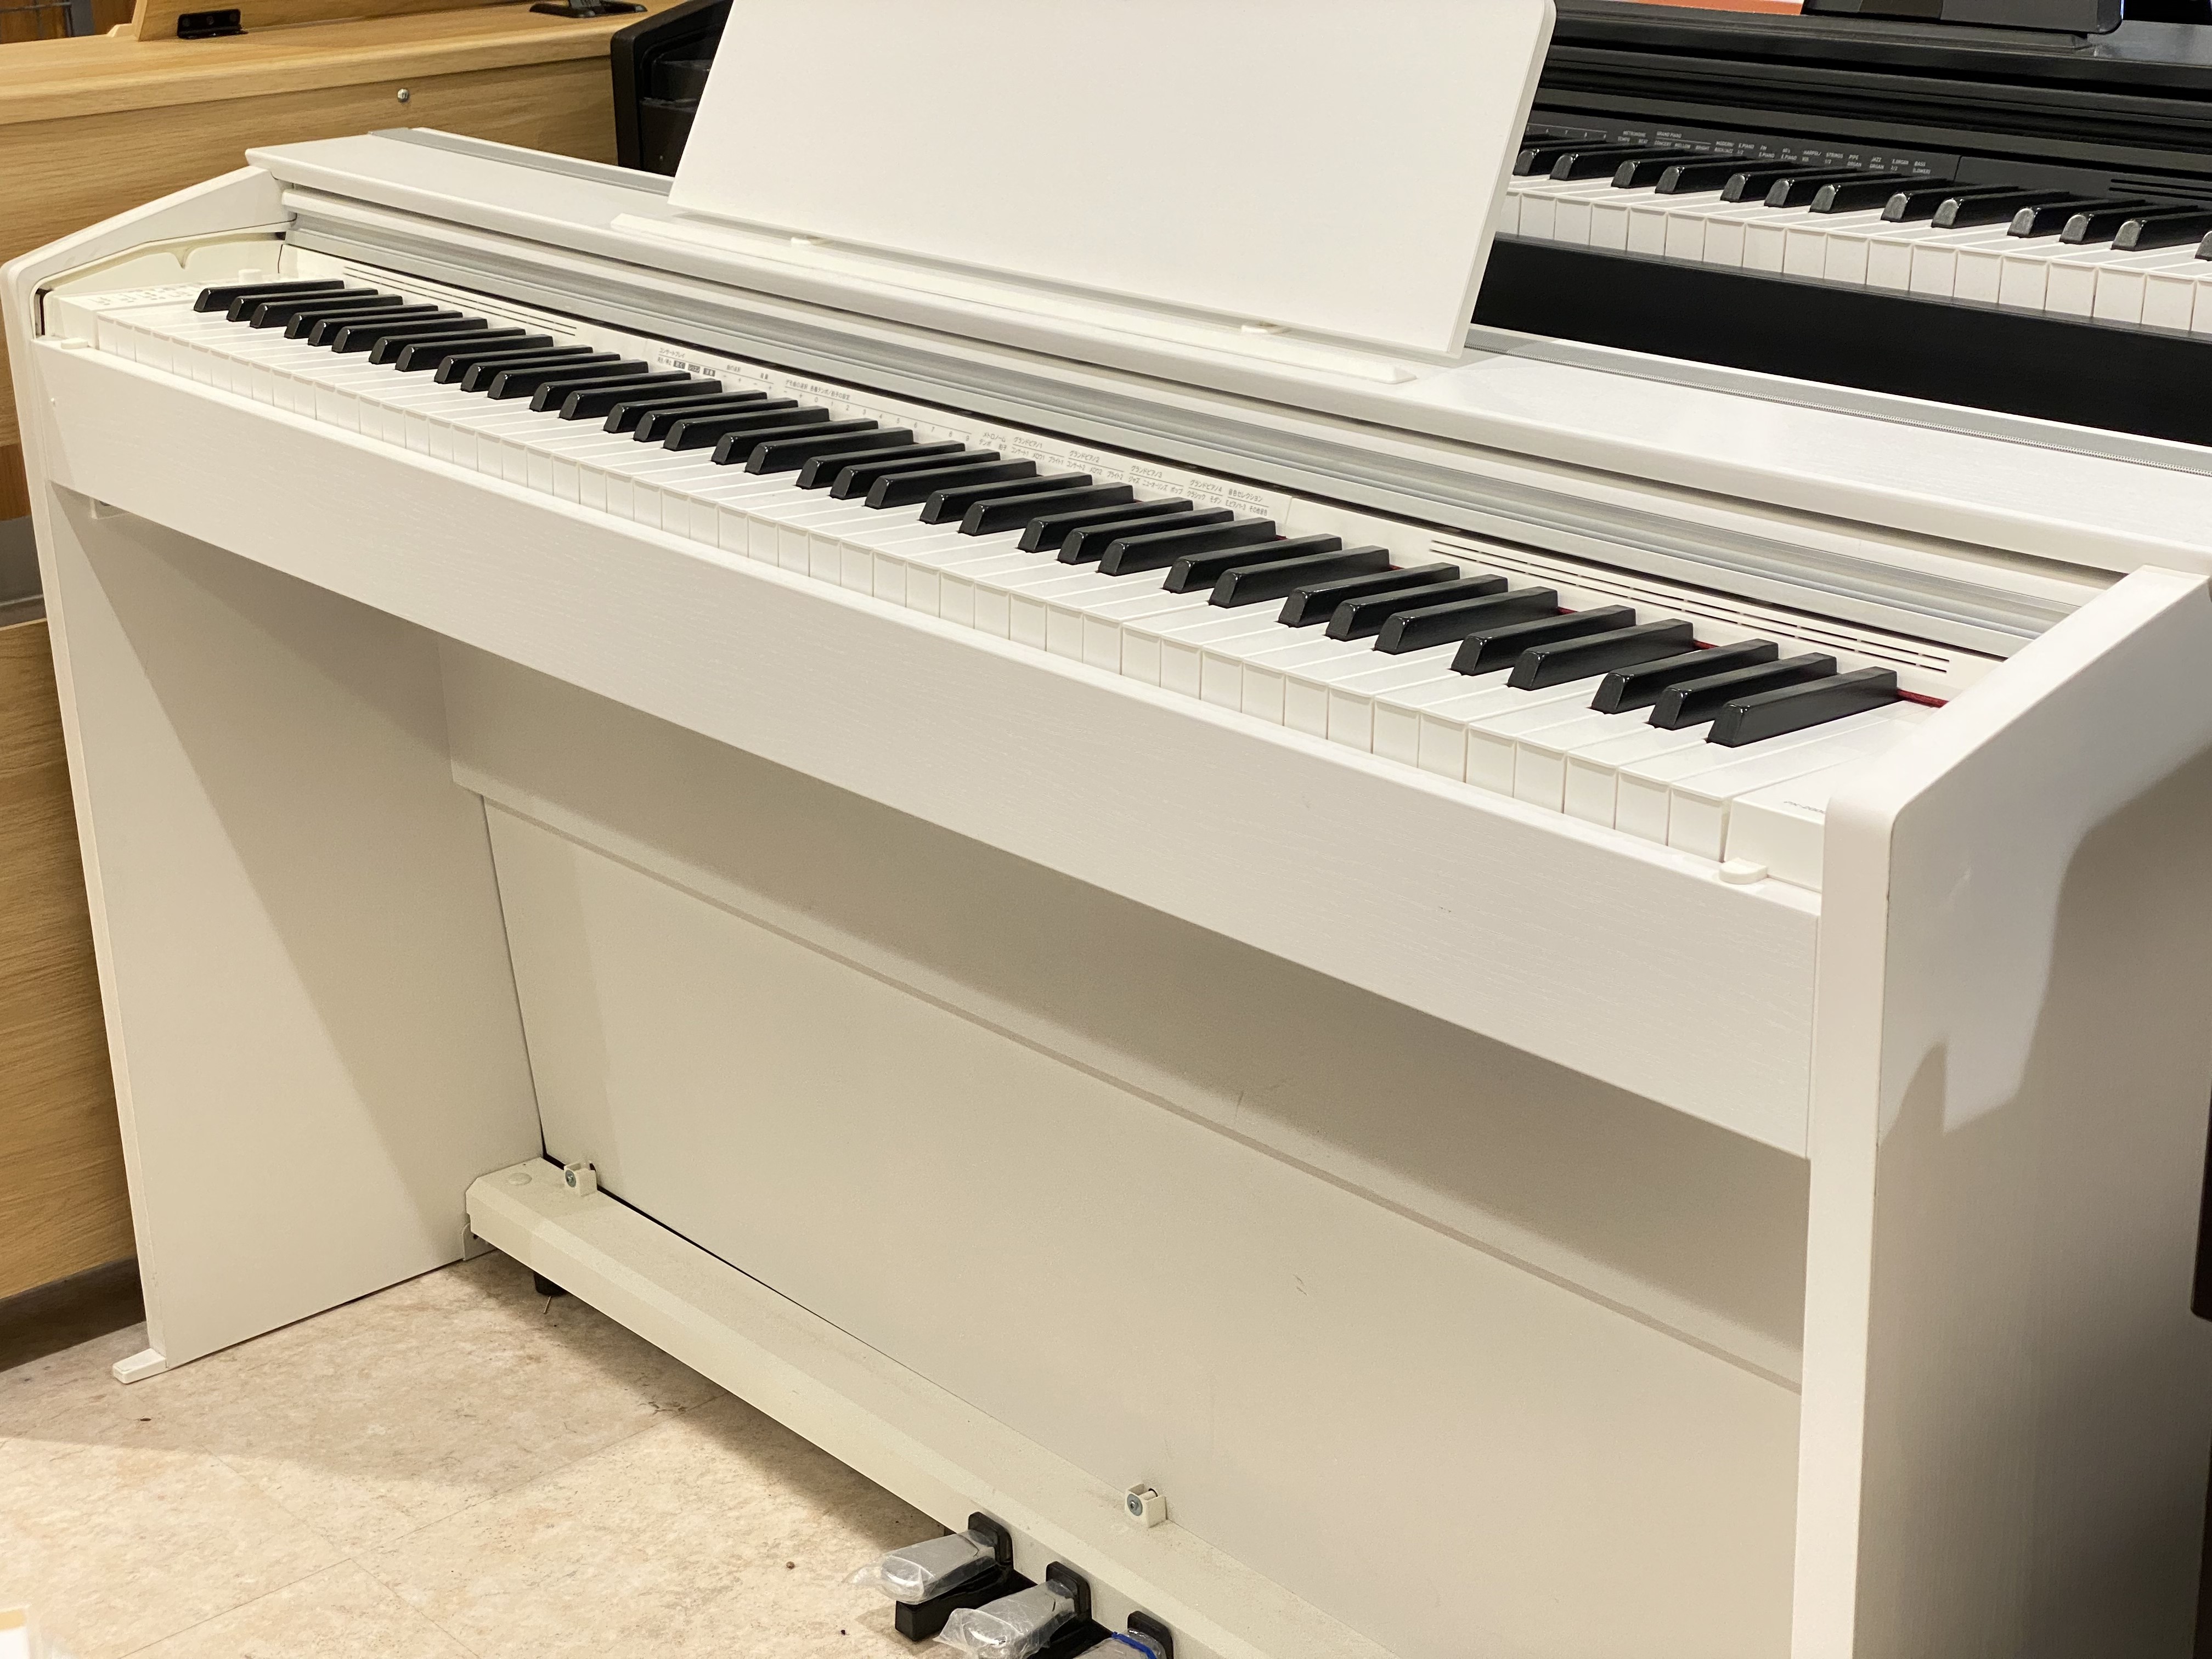 電子ピアノPX-2000GP